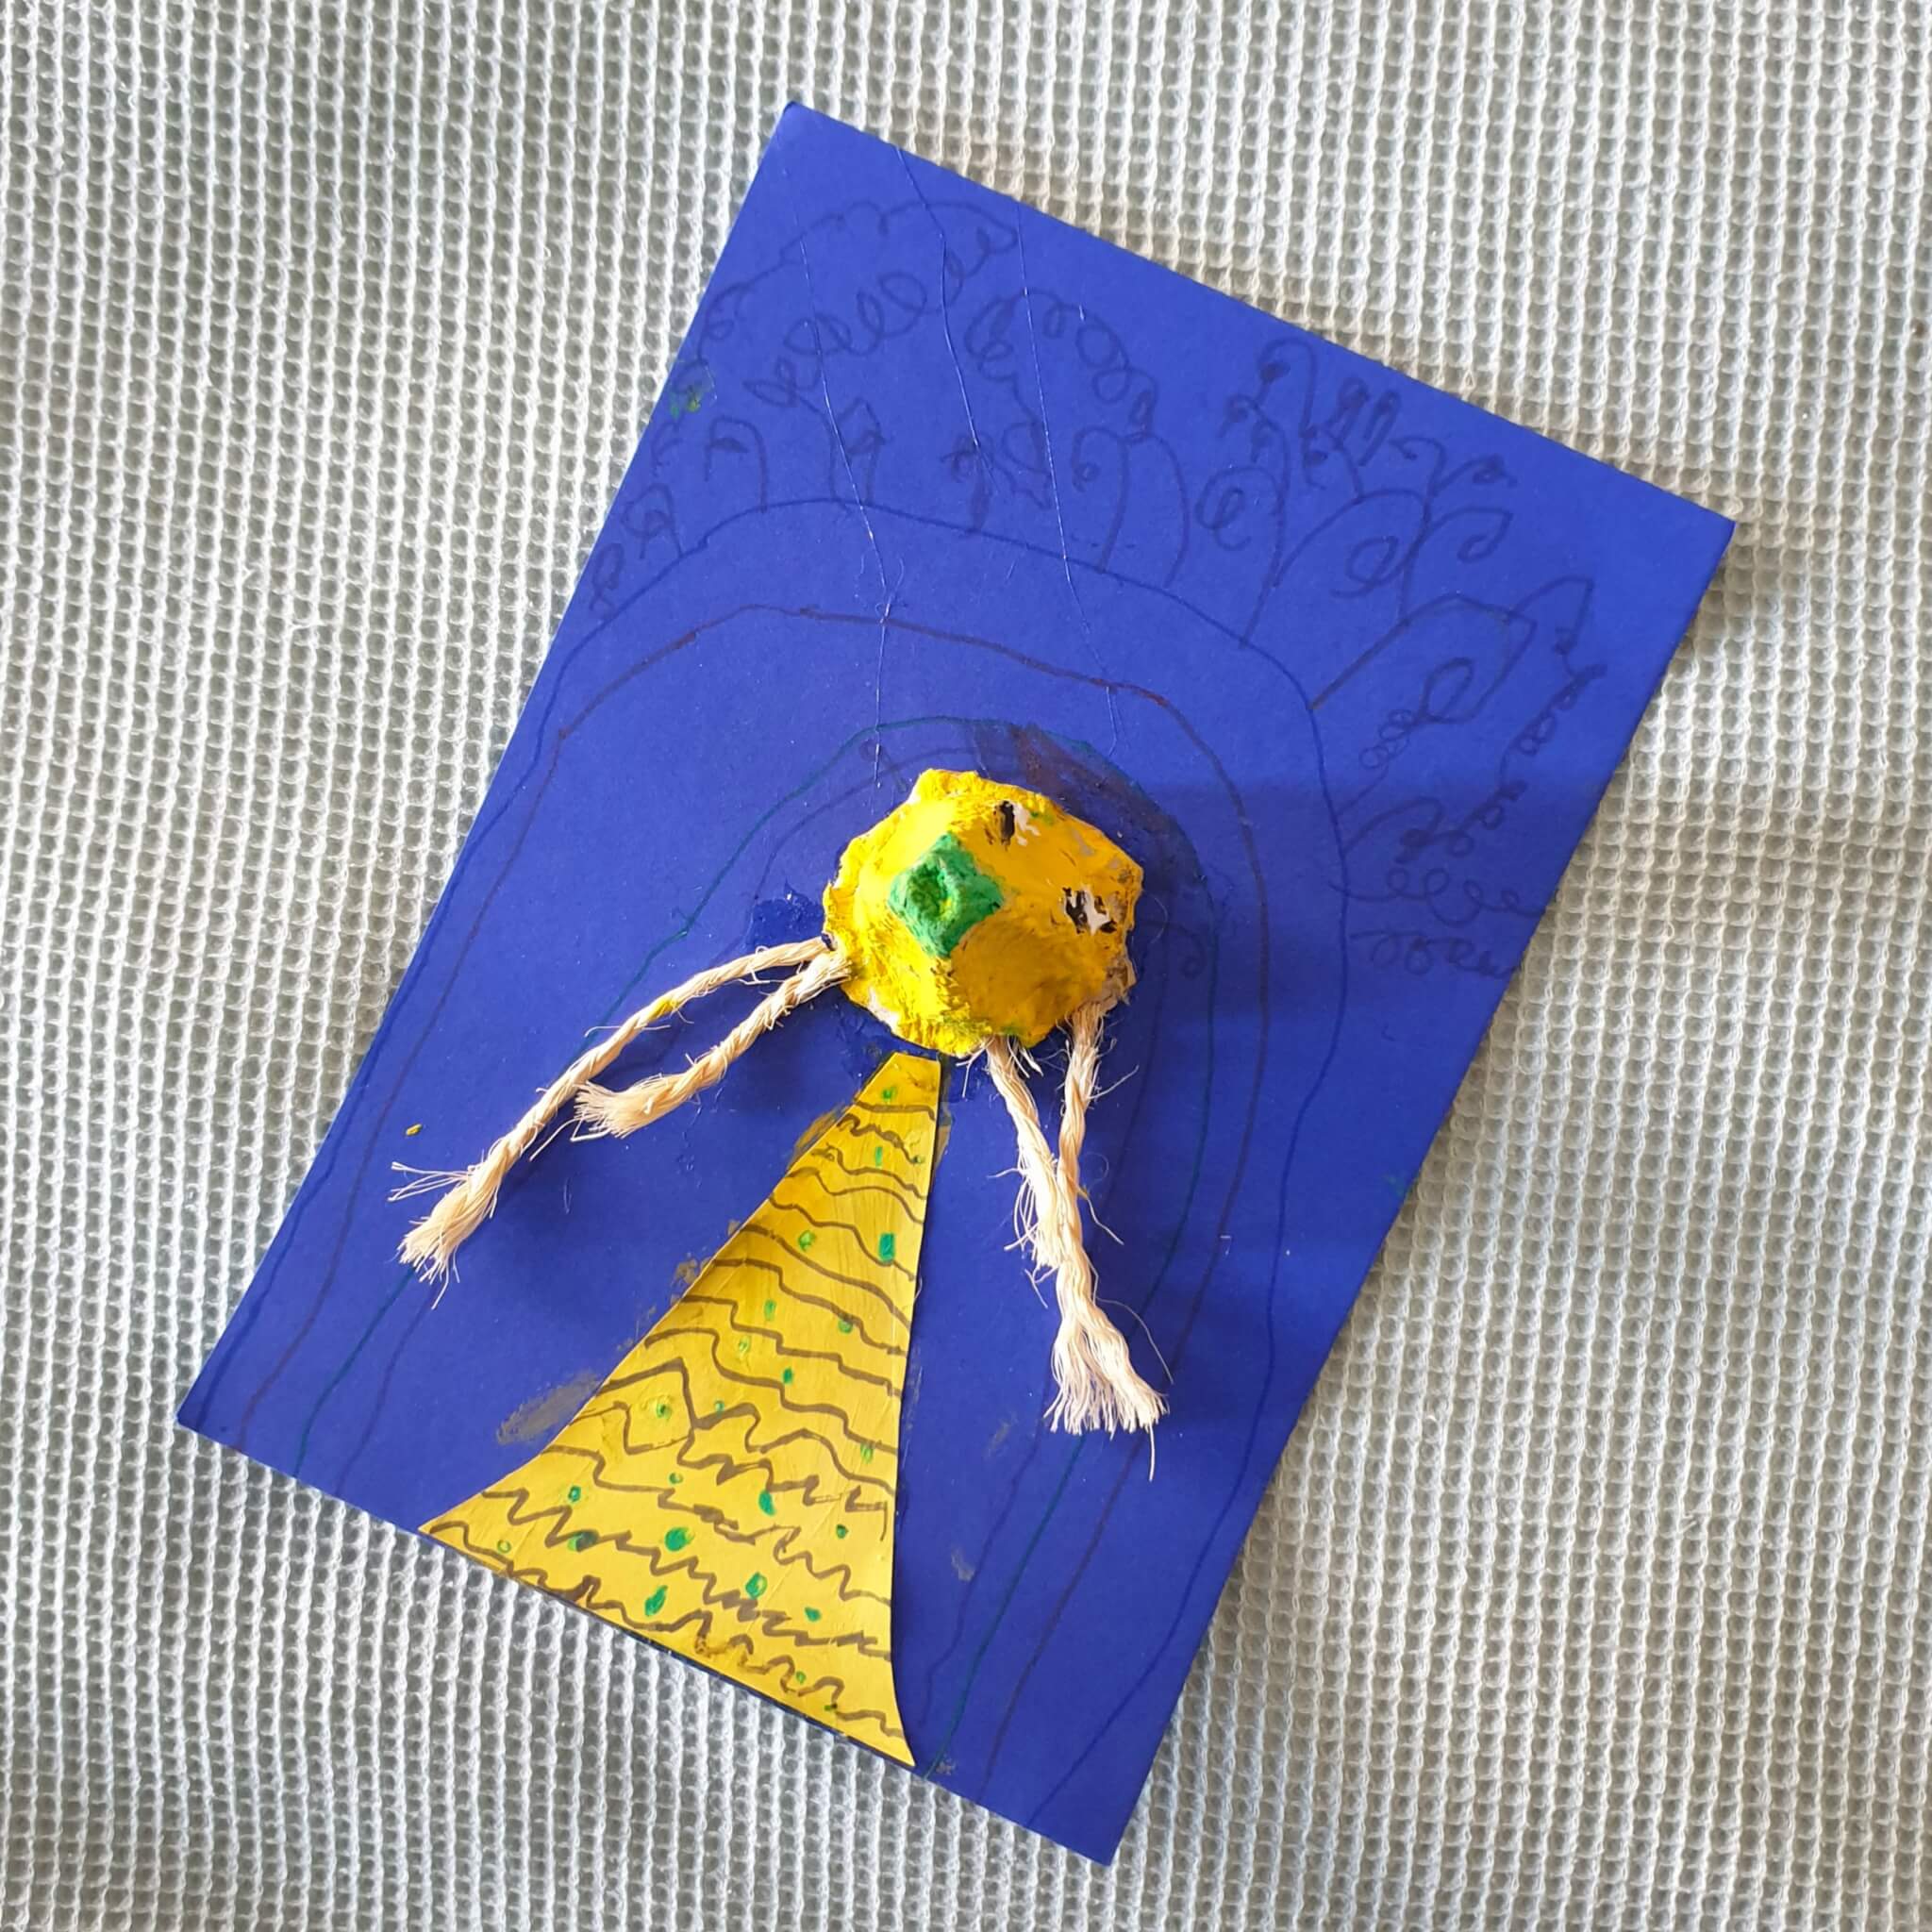 Ideeën om te knutselen met peuter en kleuter. Dit poppetje knutselde kleine meis op school. Ze gebruikte dik blauw papier als basis en knipte een jurkje van geel papier. Uit een eierdoos knipte ze één vakje en verfde het geel. Daarnaast schilderde ze er een neus en oogjes op. De haren zijn gemaakt van stukje touw. 